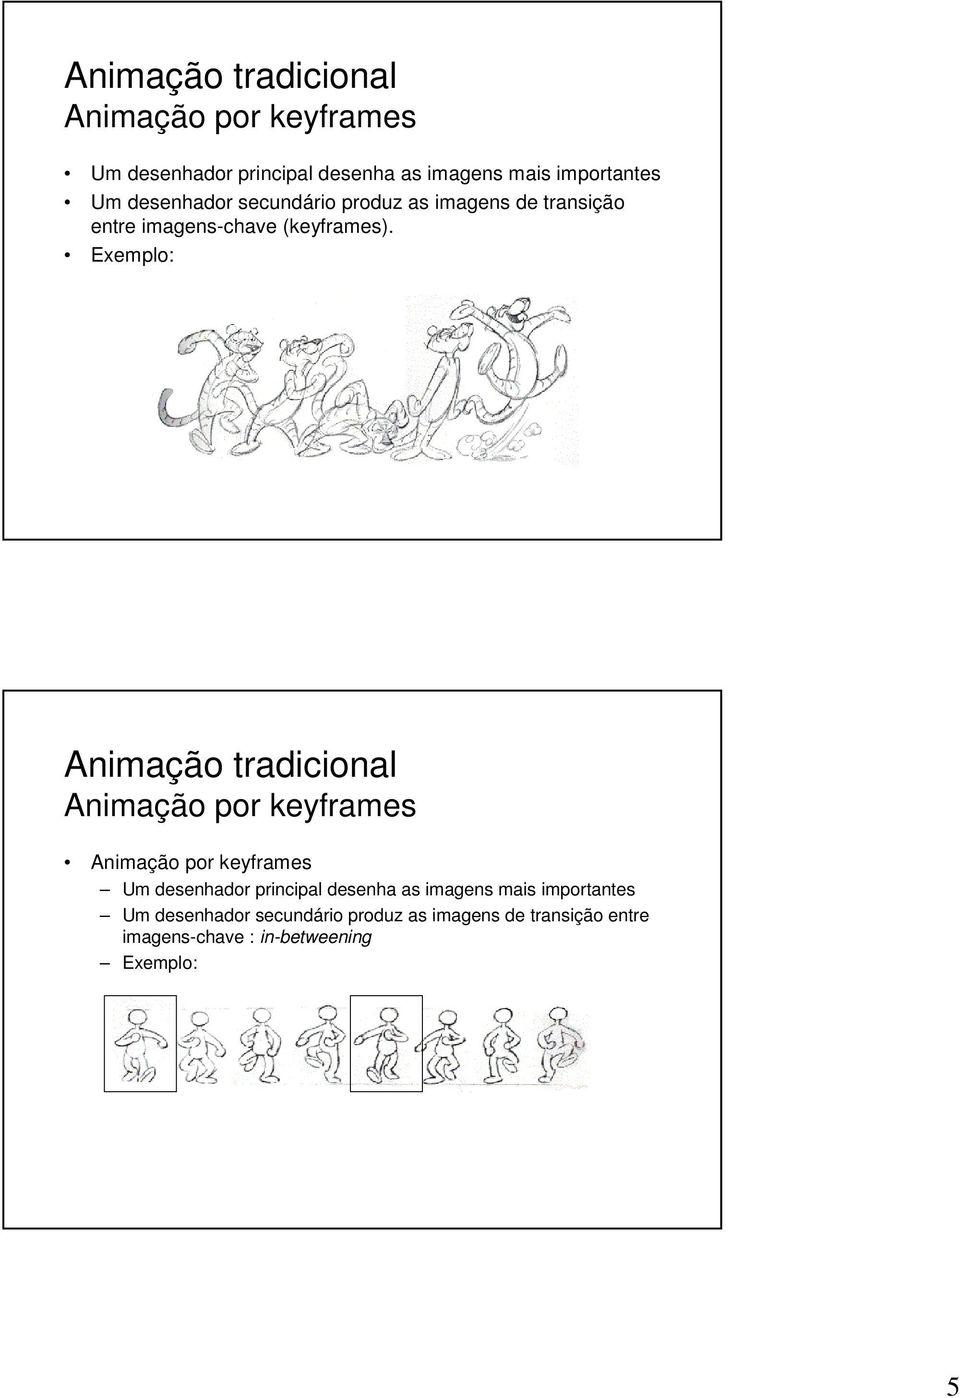 Animação tradicional Animação por keyframes Animação por keyframes Um desenhador principal desenha as